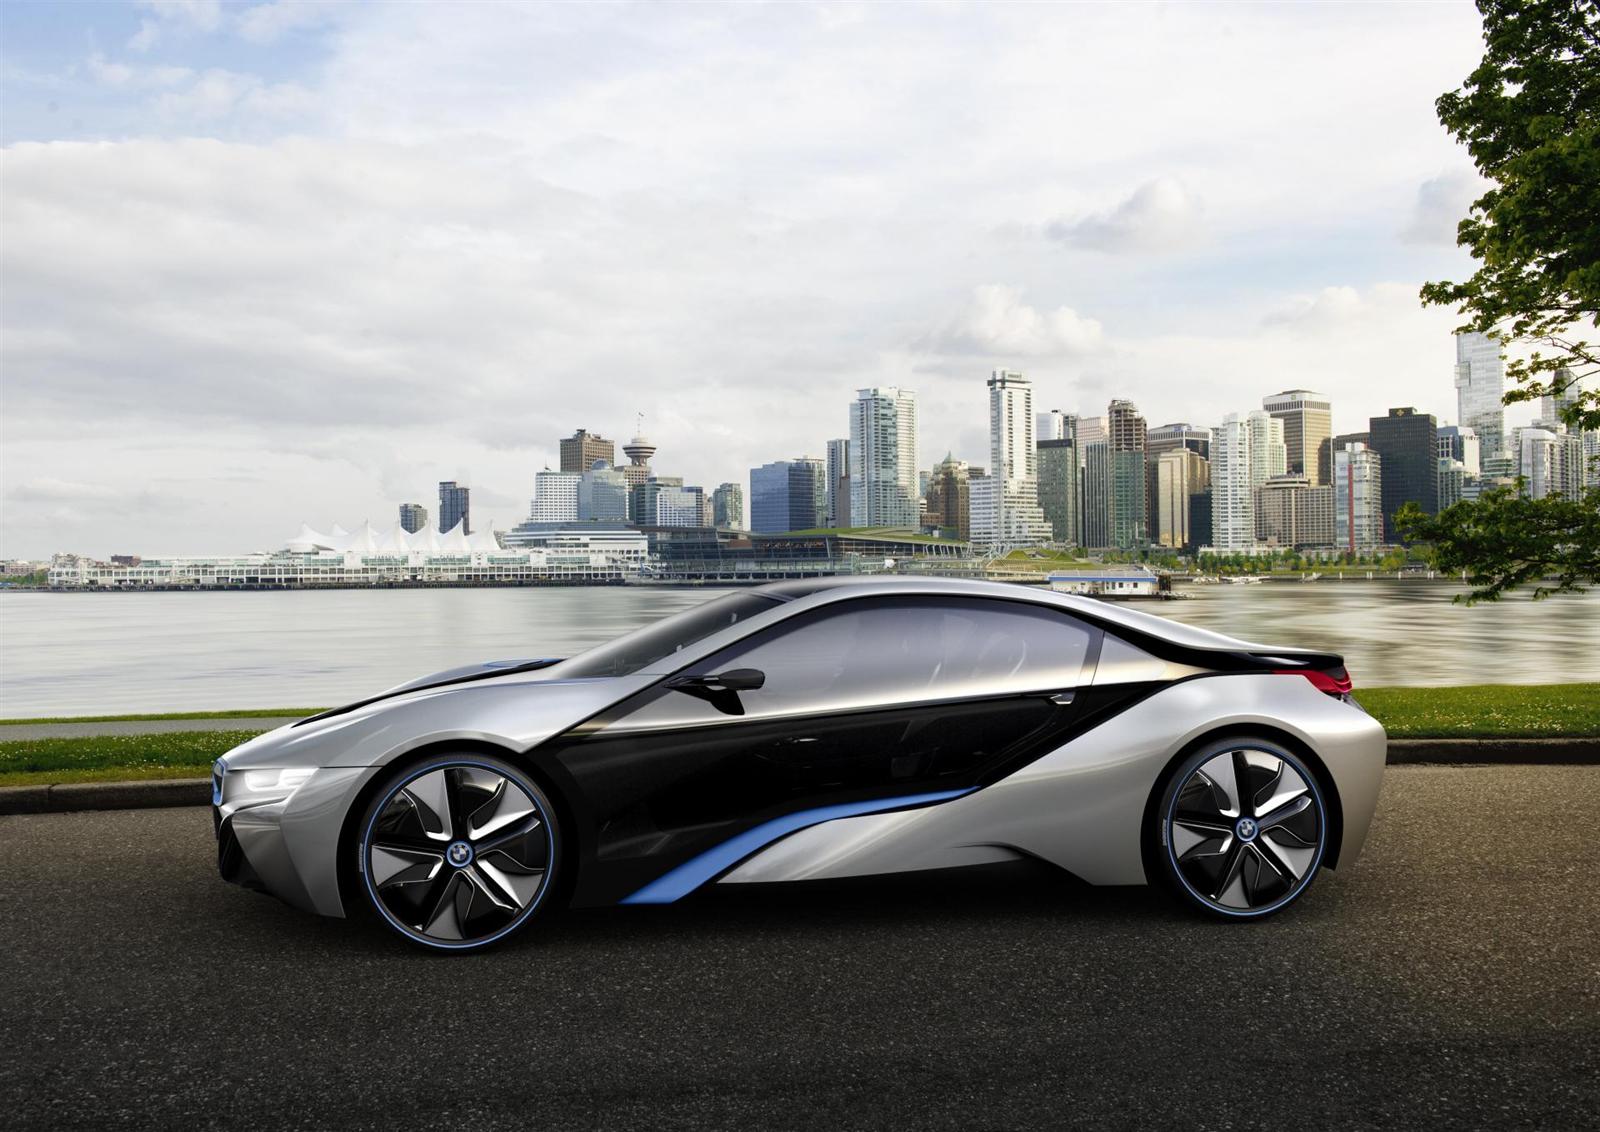 2012 BMW i8 Concept